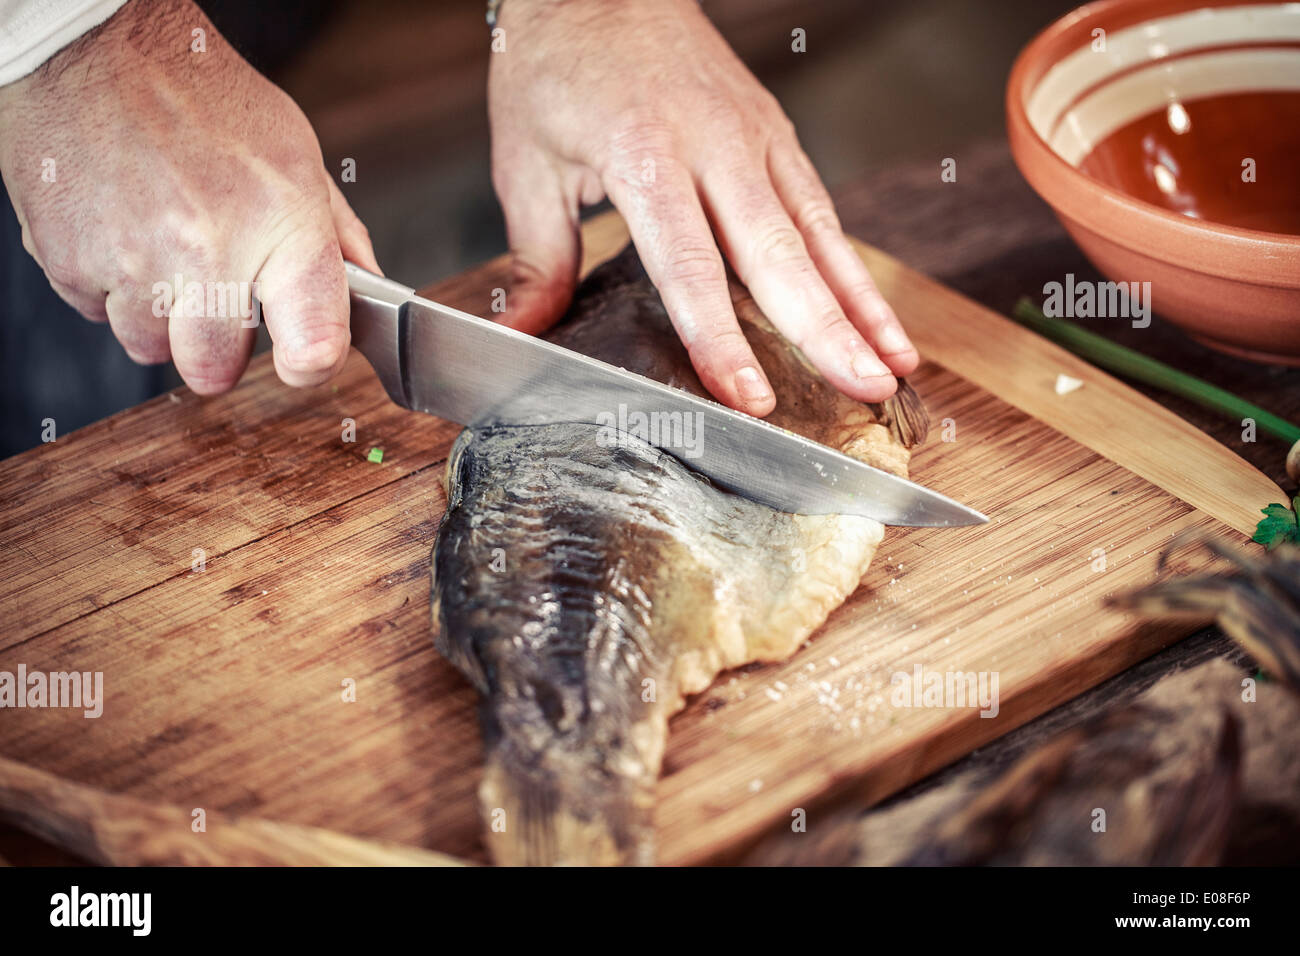 Unrecognizable person cutting pike fish Stock Photo